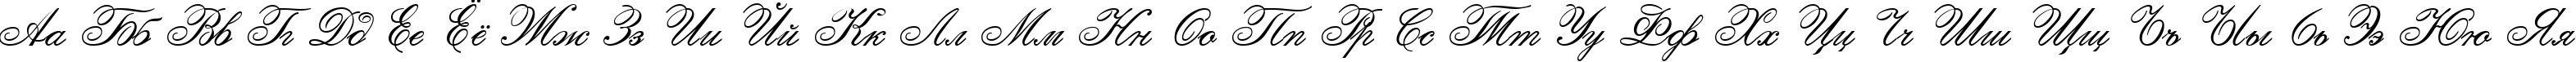 Пример написания русского алфавита шрифтом Calligraphia Two